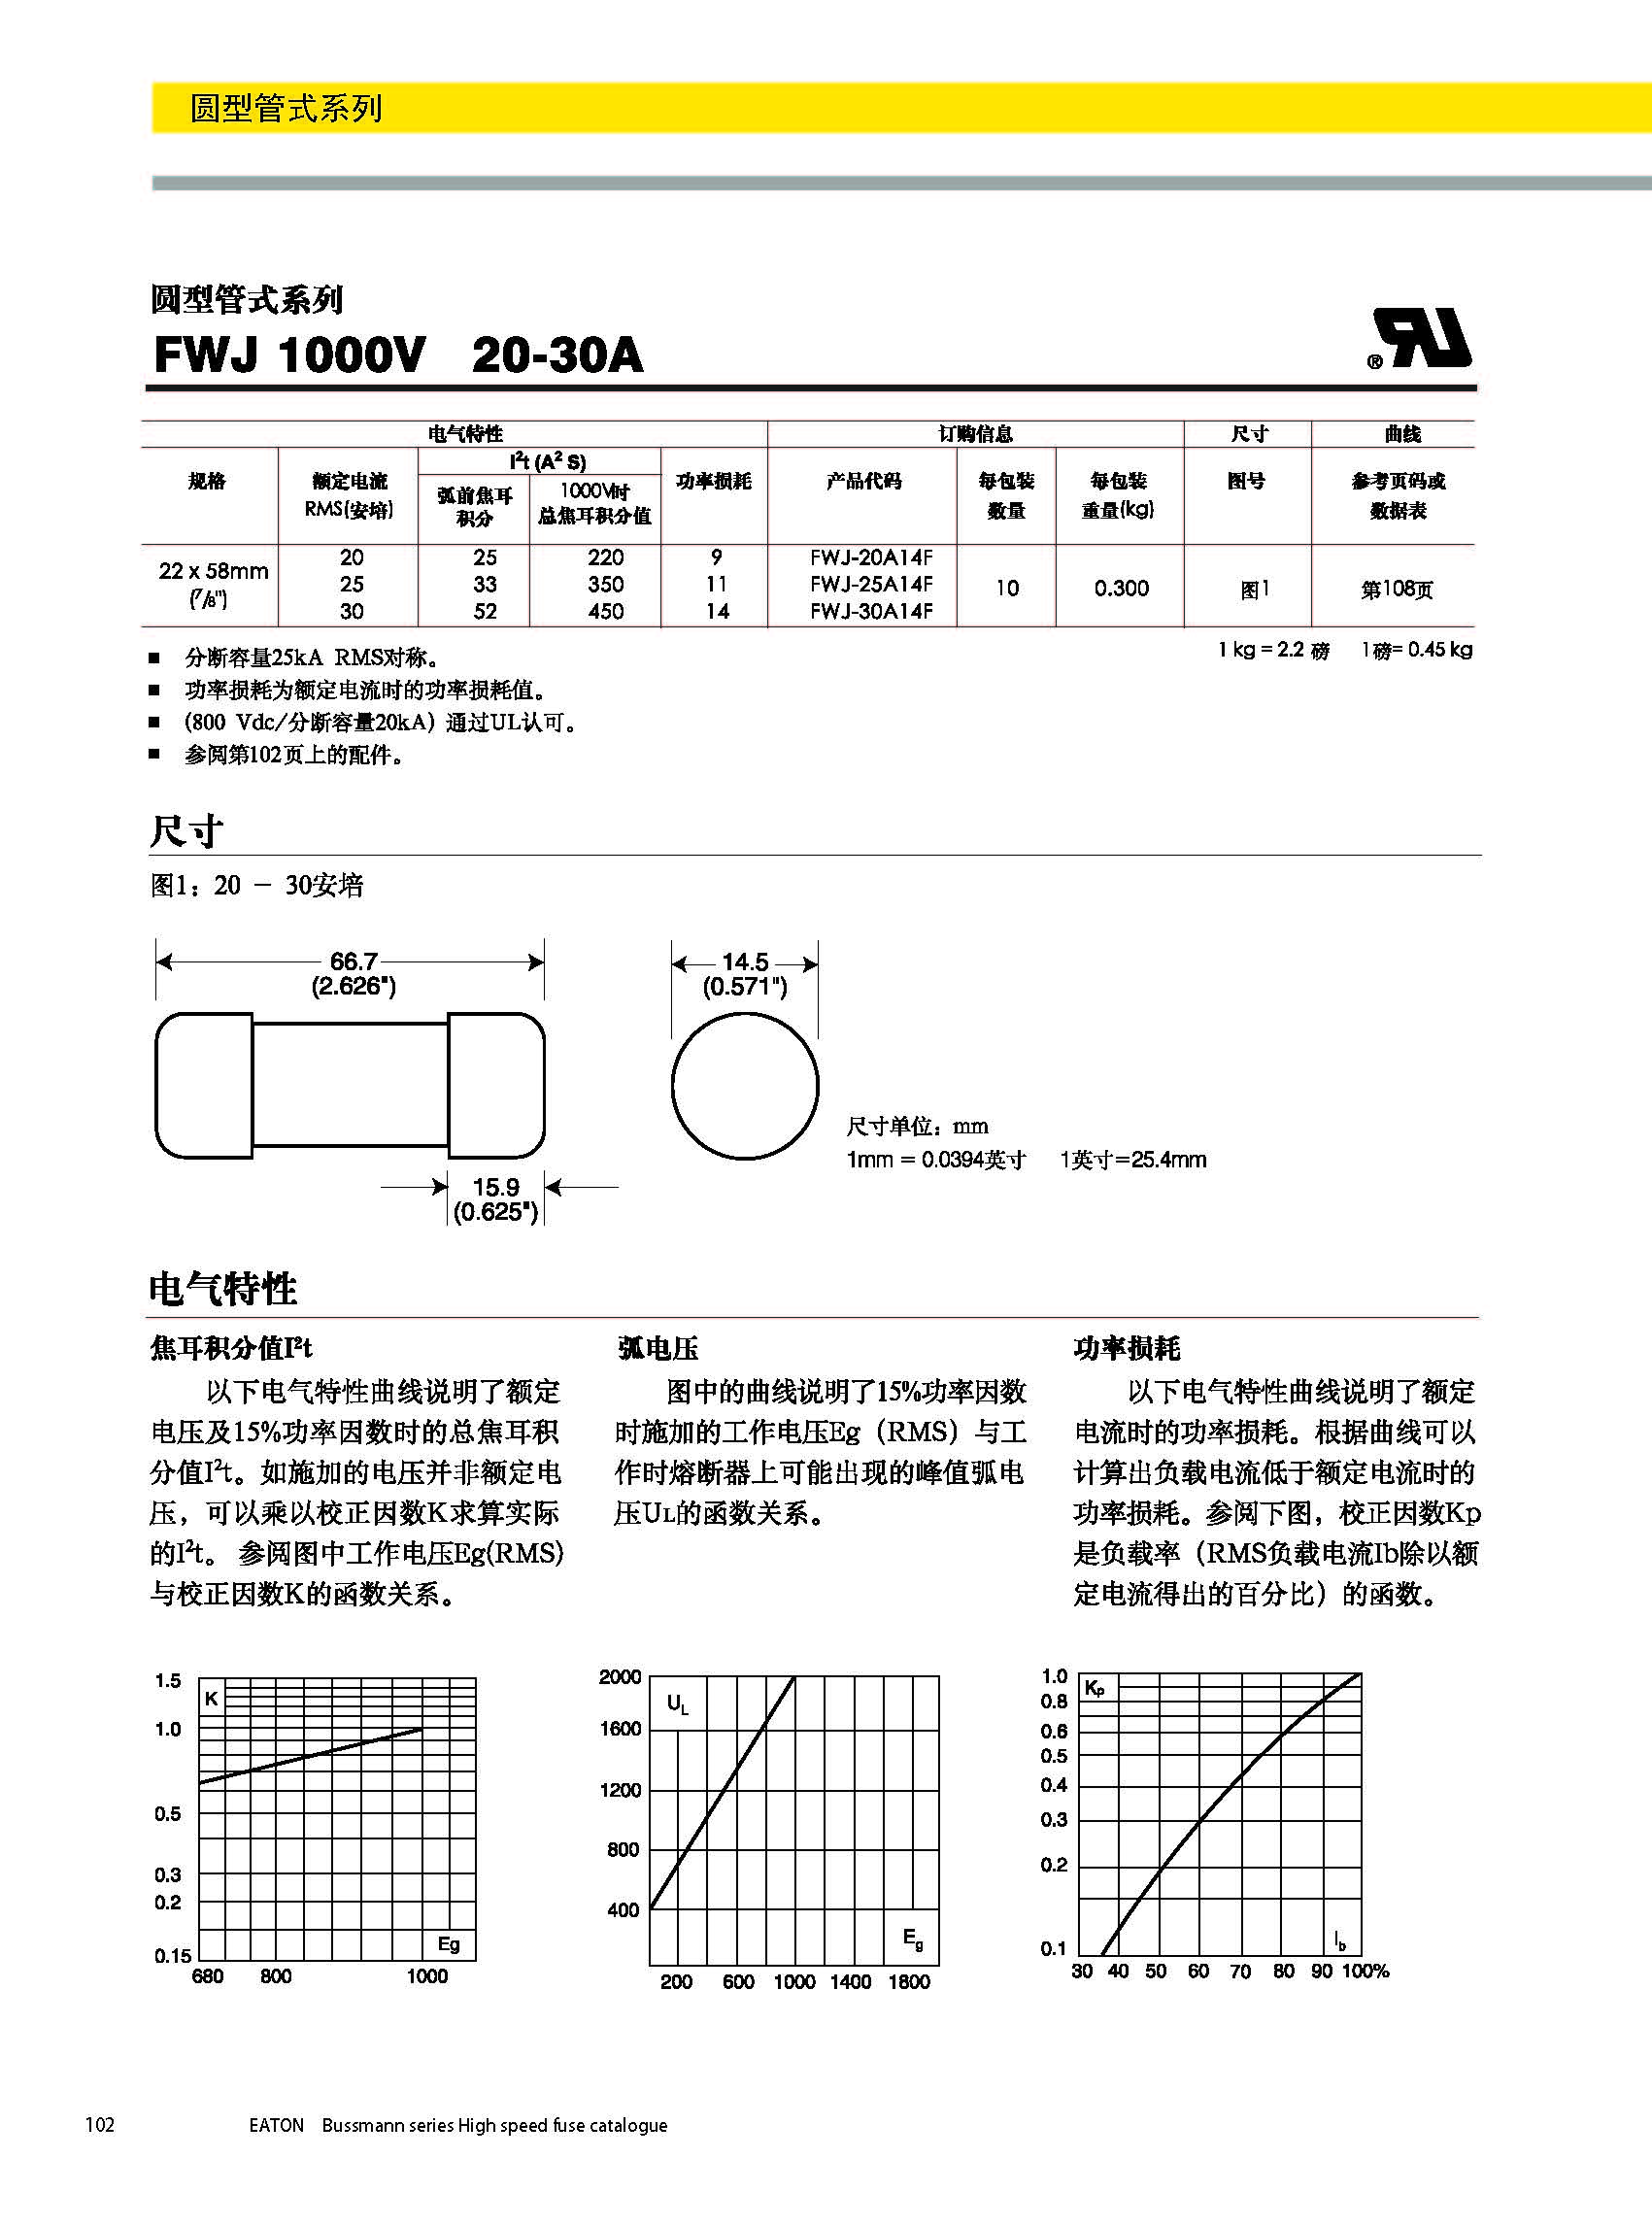 圆形管式熔断器FWS 20*127 系列规格、尺寸.jpg